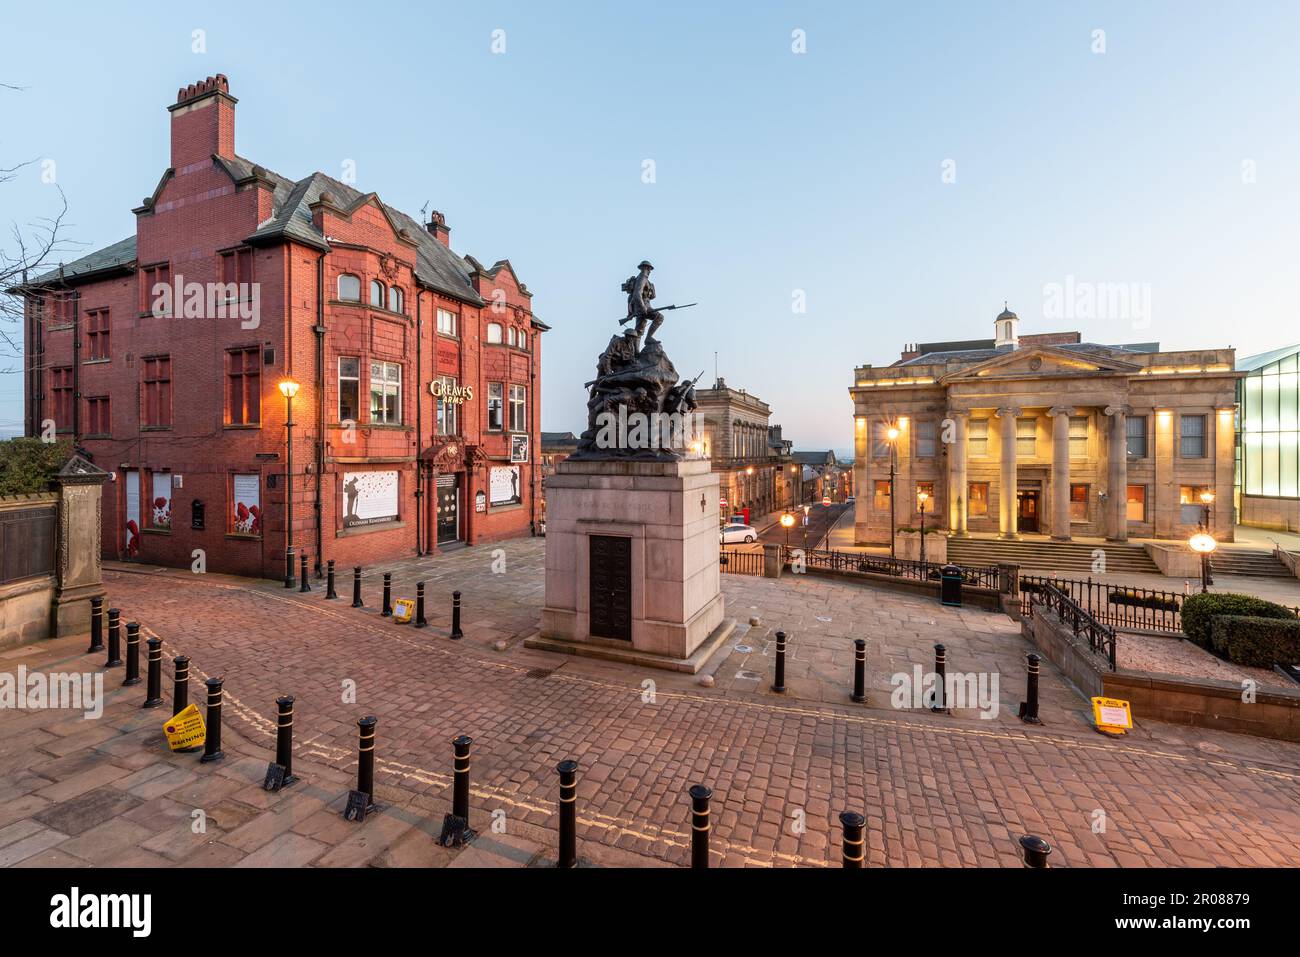 OLDHAM, Großbritannien – 15. FEBRUAR 2019 – beleuchteter Blick auf das Rathaus in einer Yorkshire Street mit war Memorial Sculpture in Oldham City, Großbritannien Stockfoto